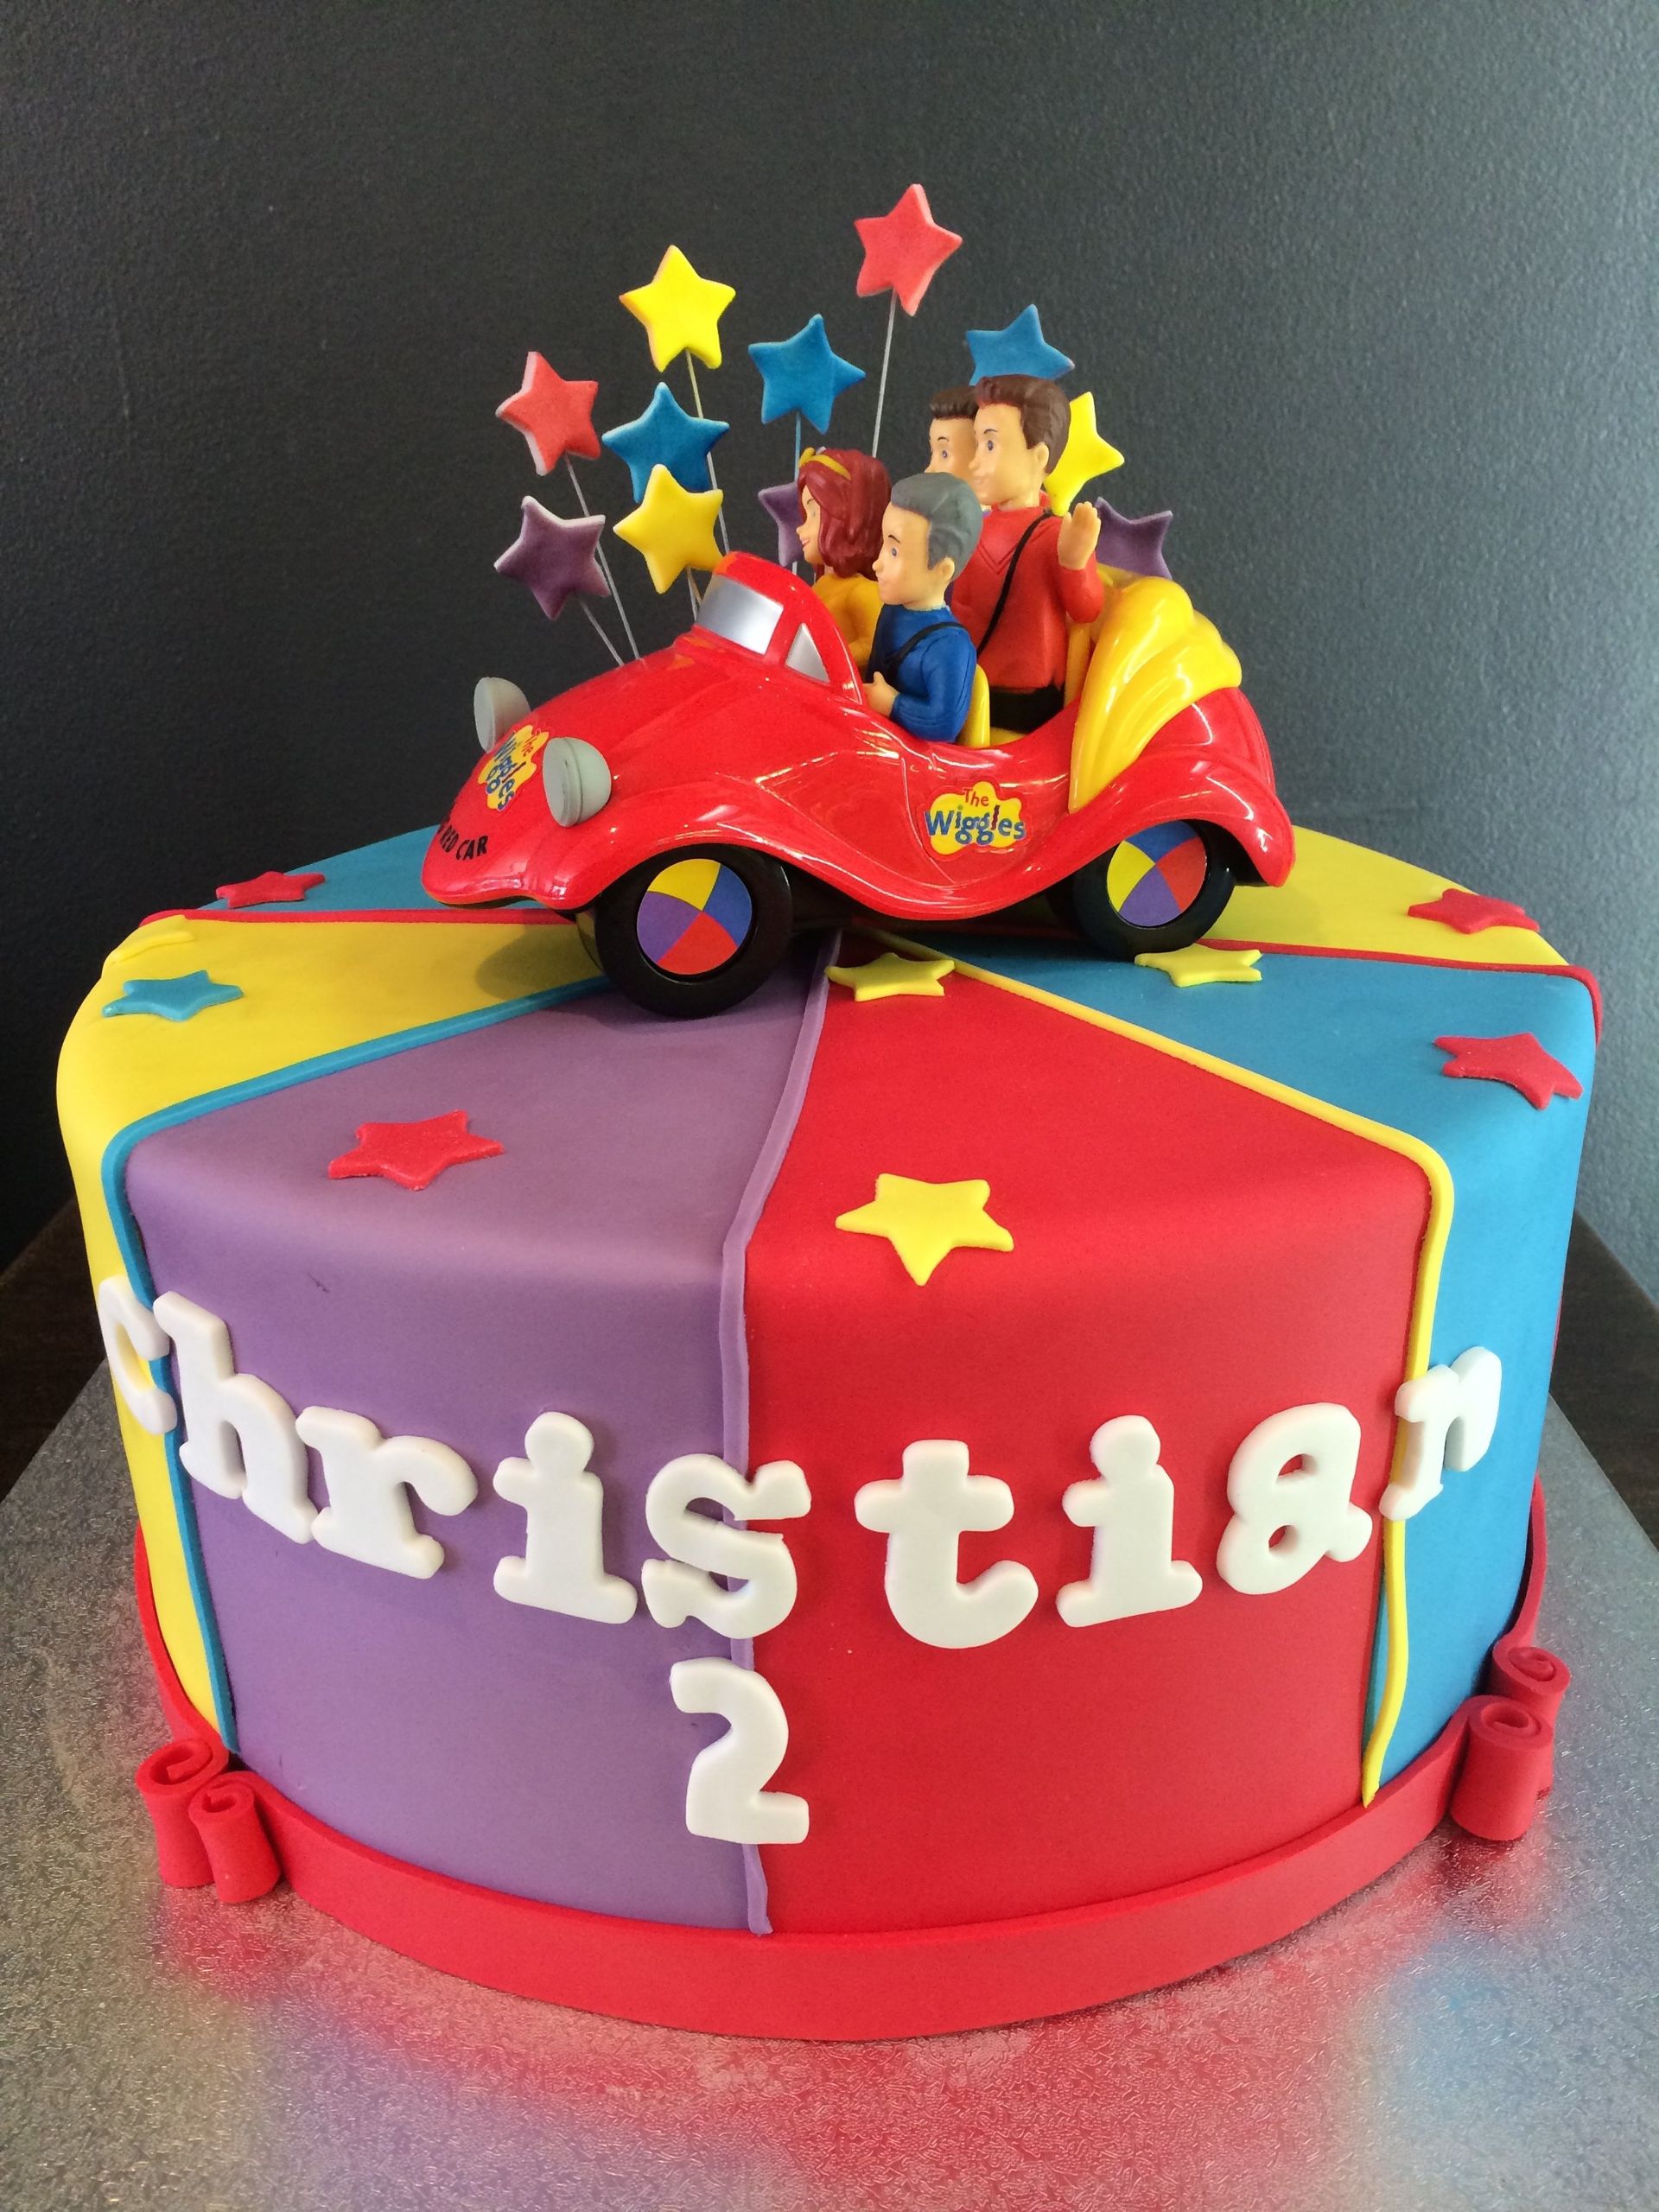 custom cake with Super Mario